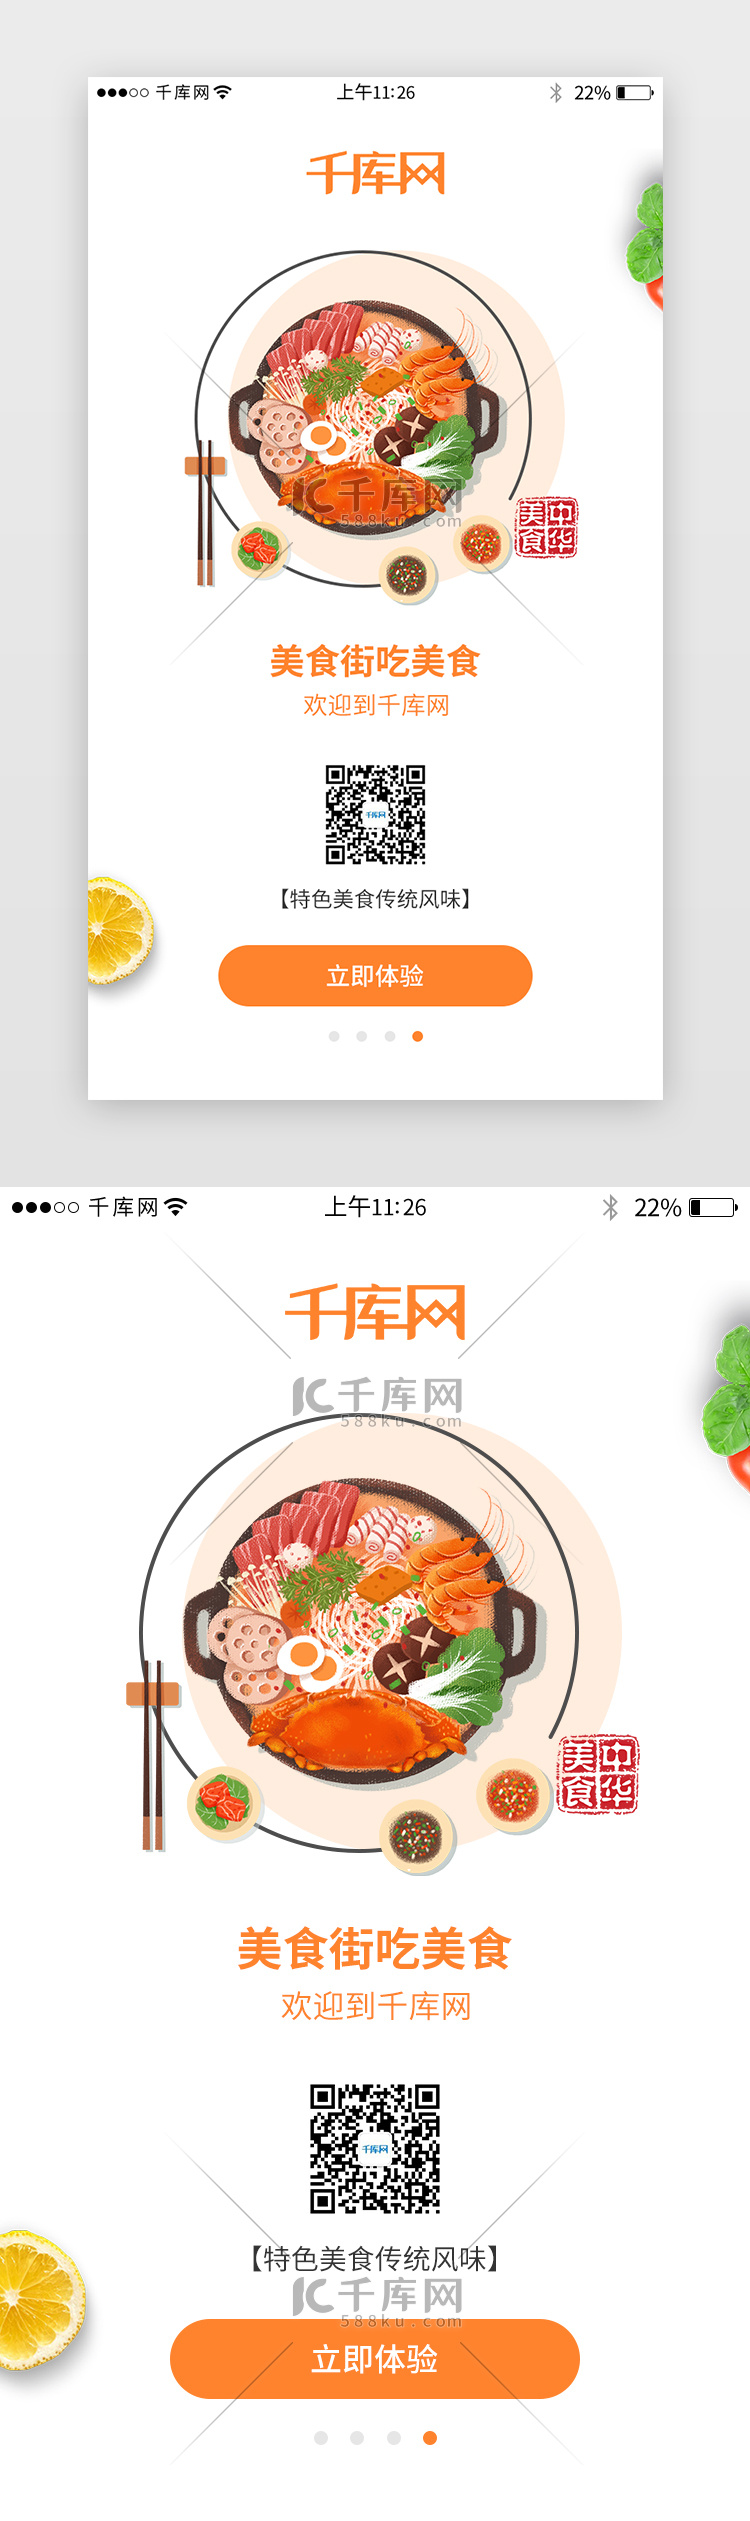 橙色系美食app闪屏界面设计启动页引导页闪屏电商